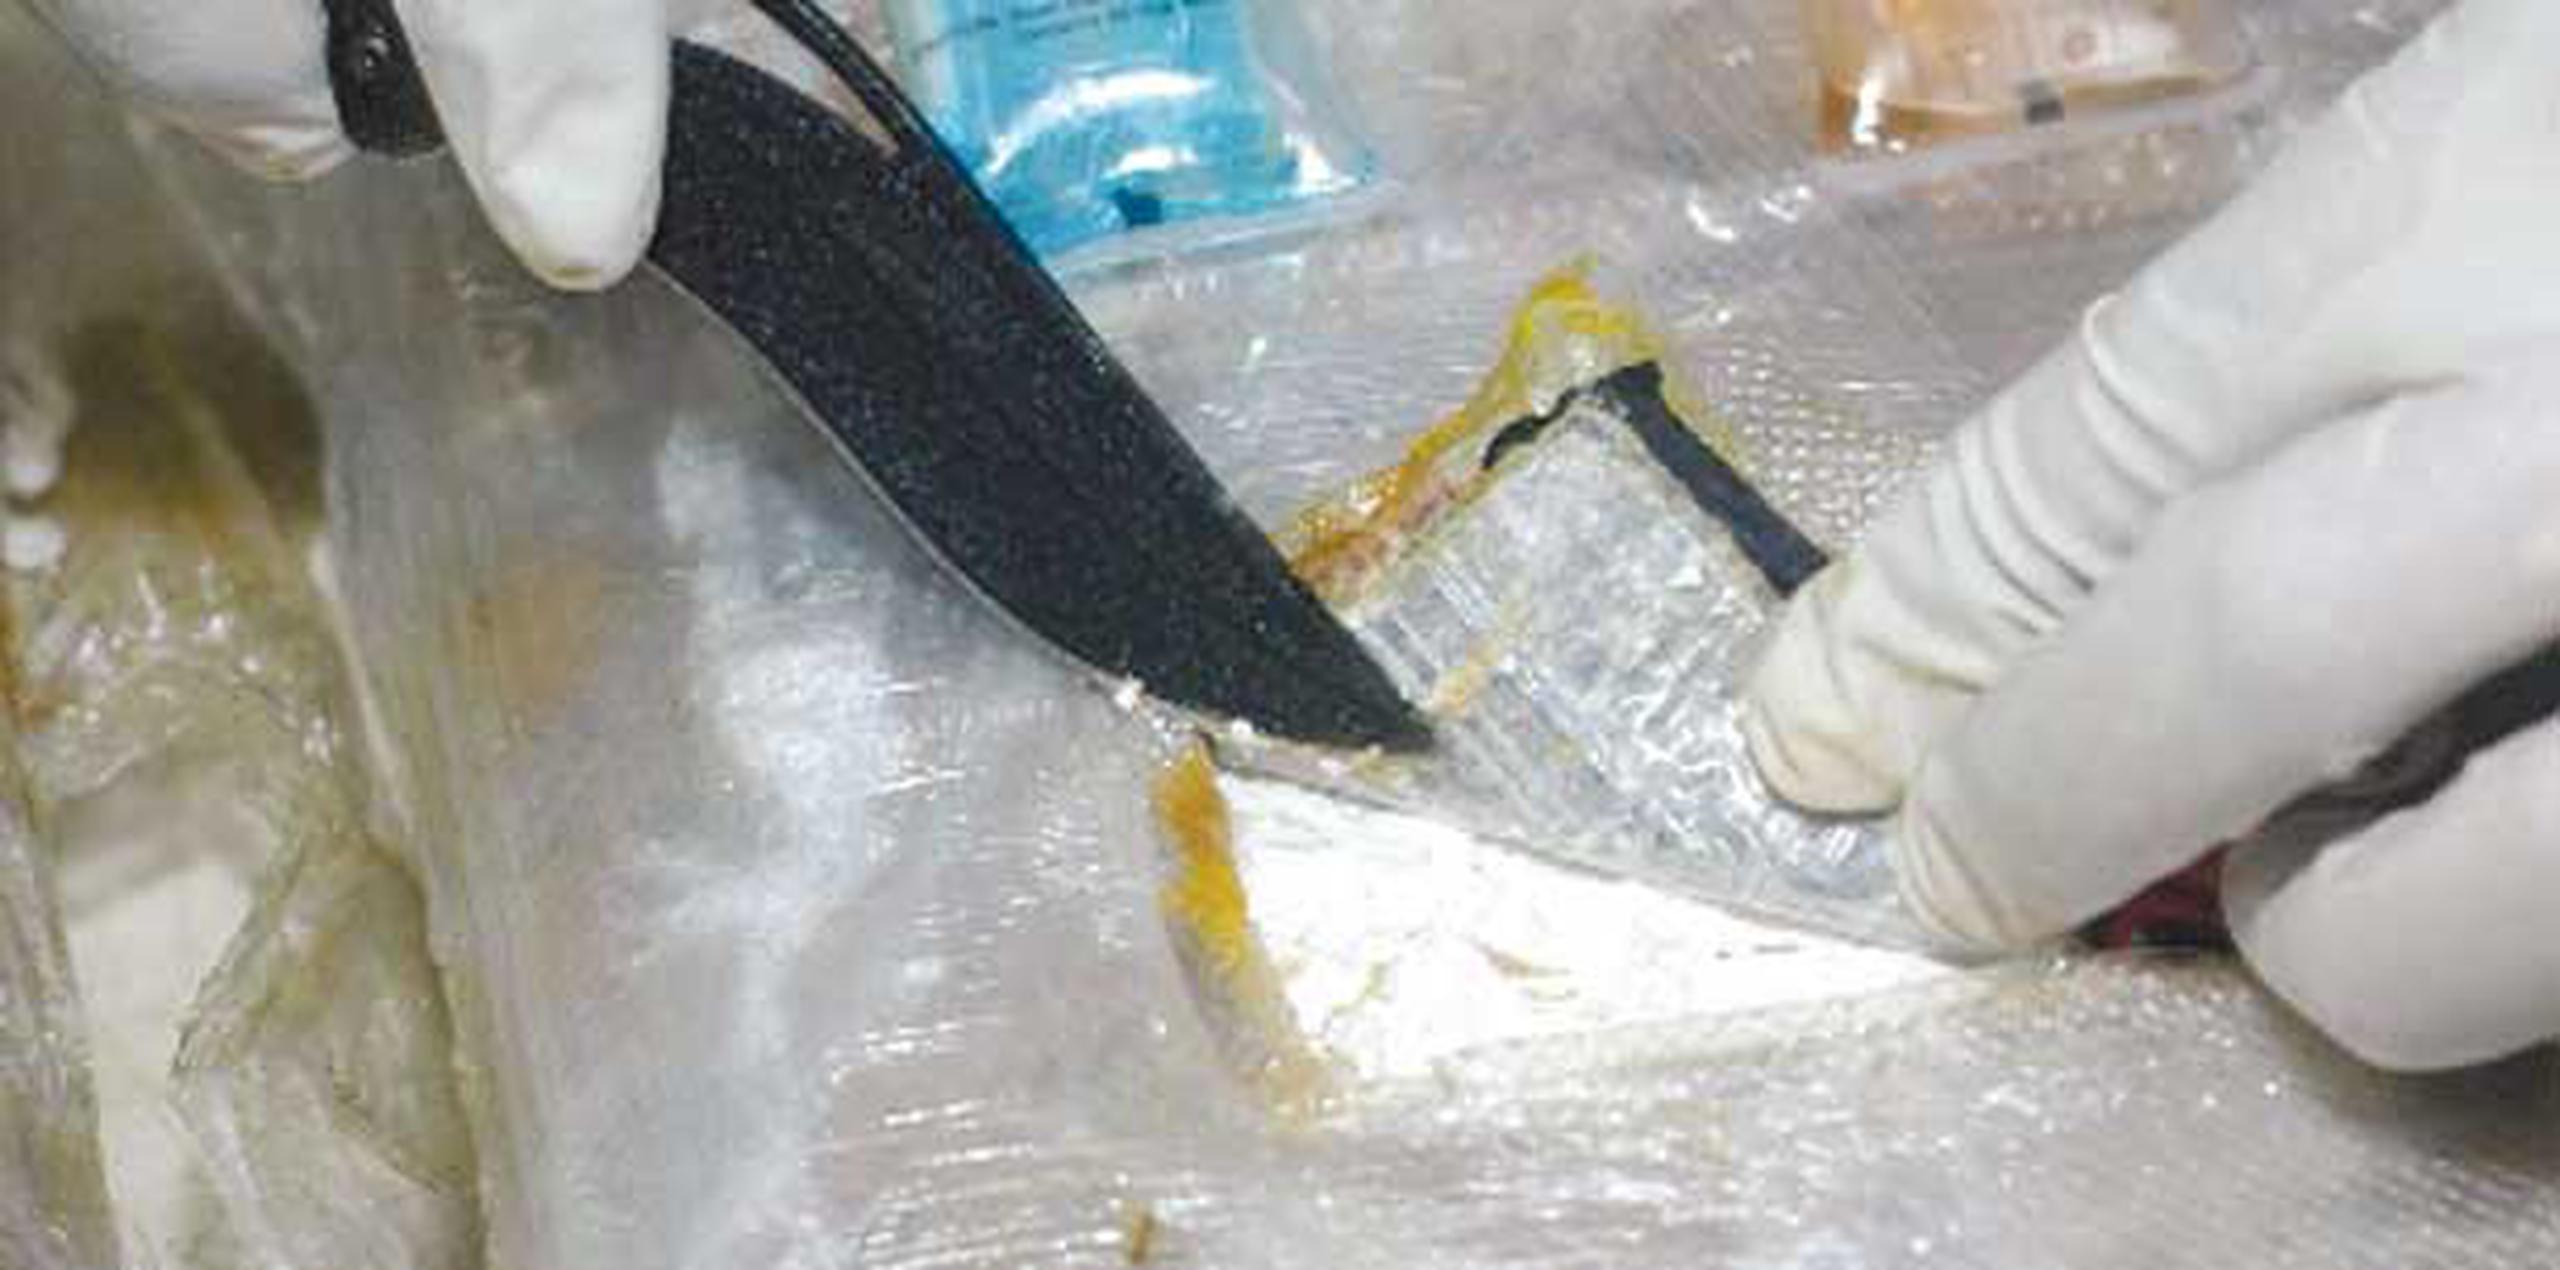 Al examinar la sustancia de polvo blanco en los paquetes incautados, el mismo dio positivo a cocaína, confirmó el CBP. (Archivo)